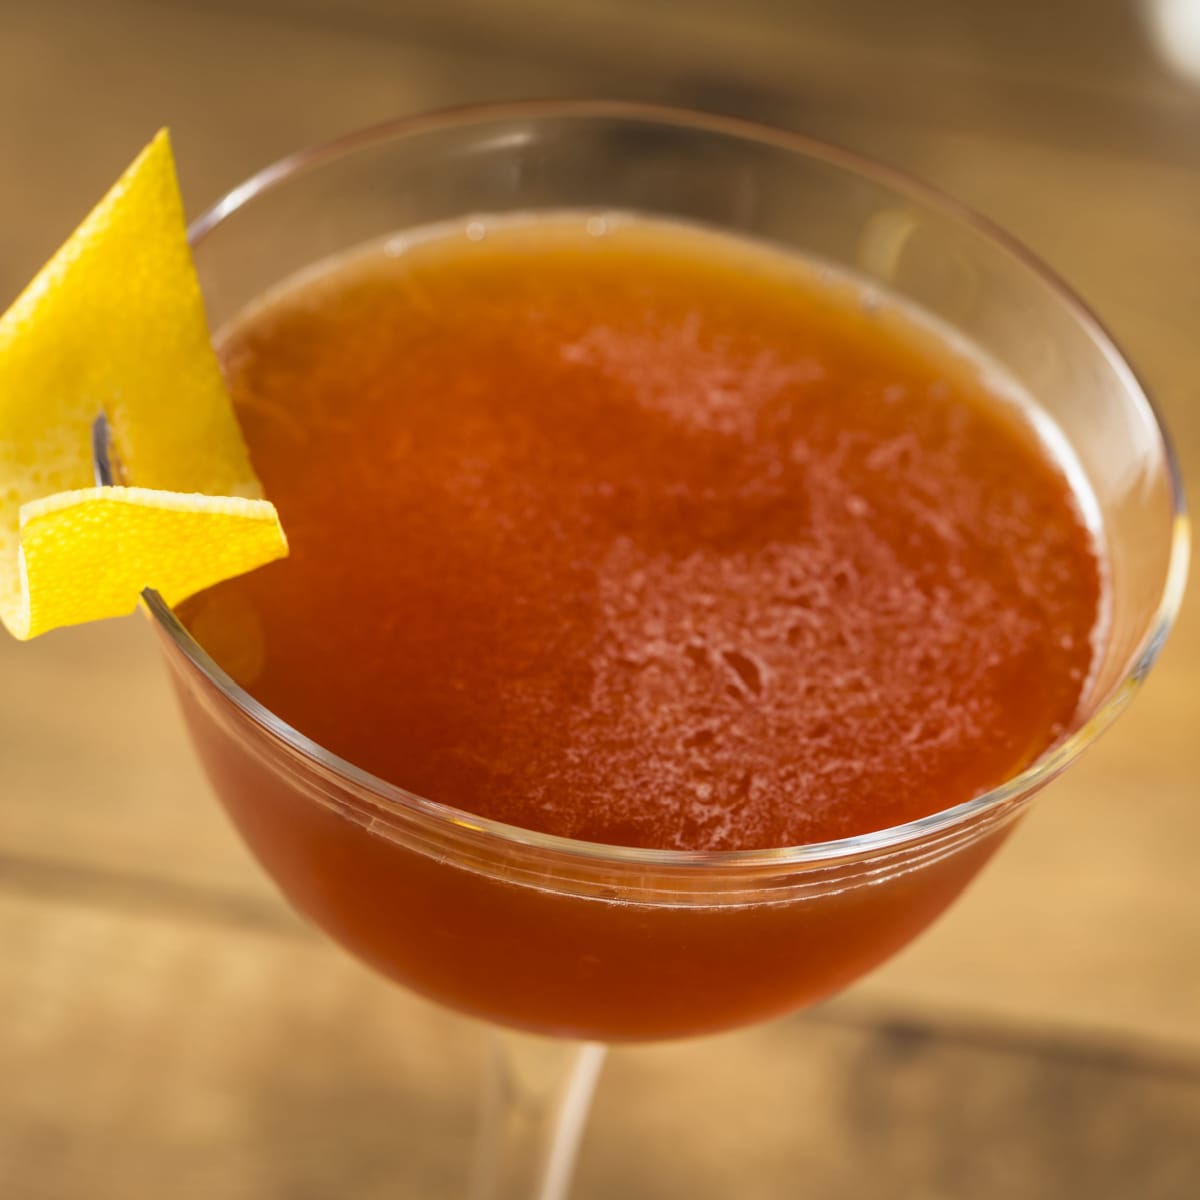 Boozy Bourbon Paper Plane Cocktail with Lemon Juice